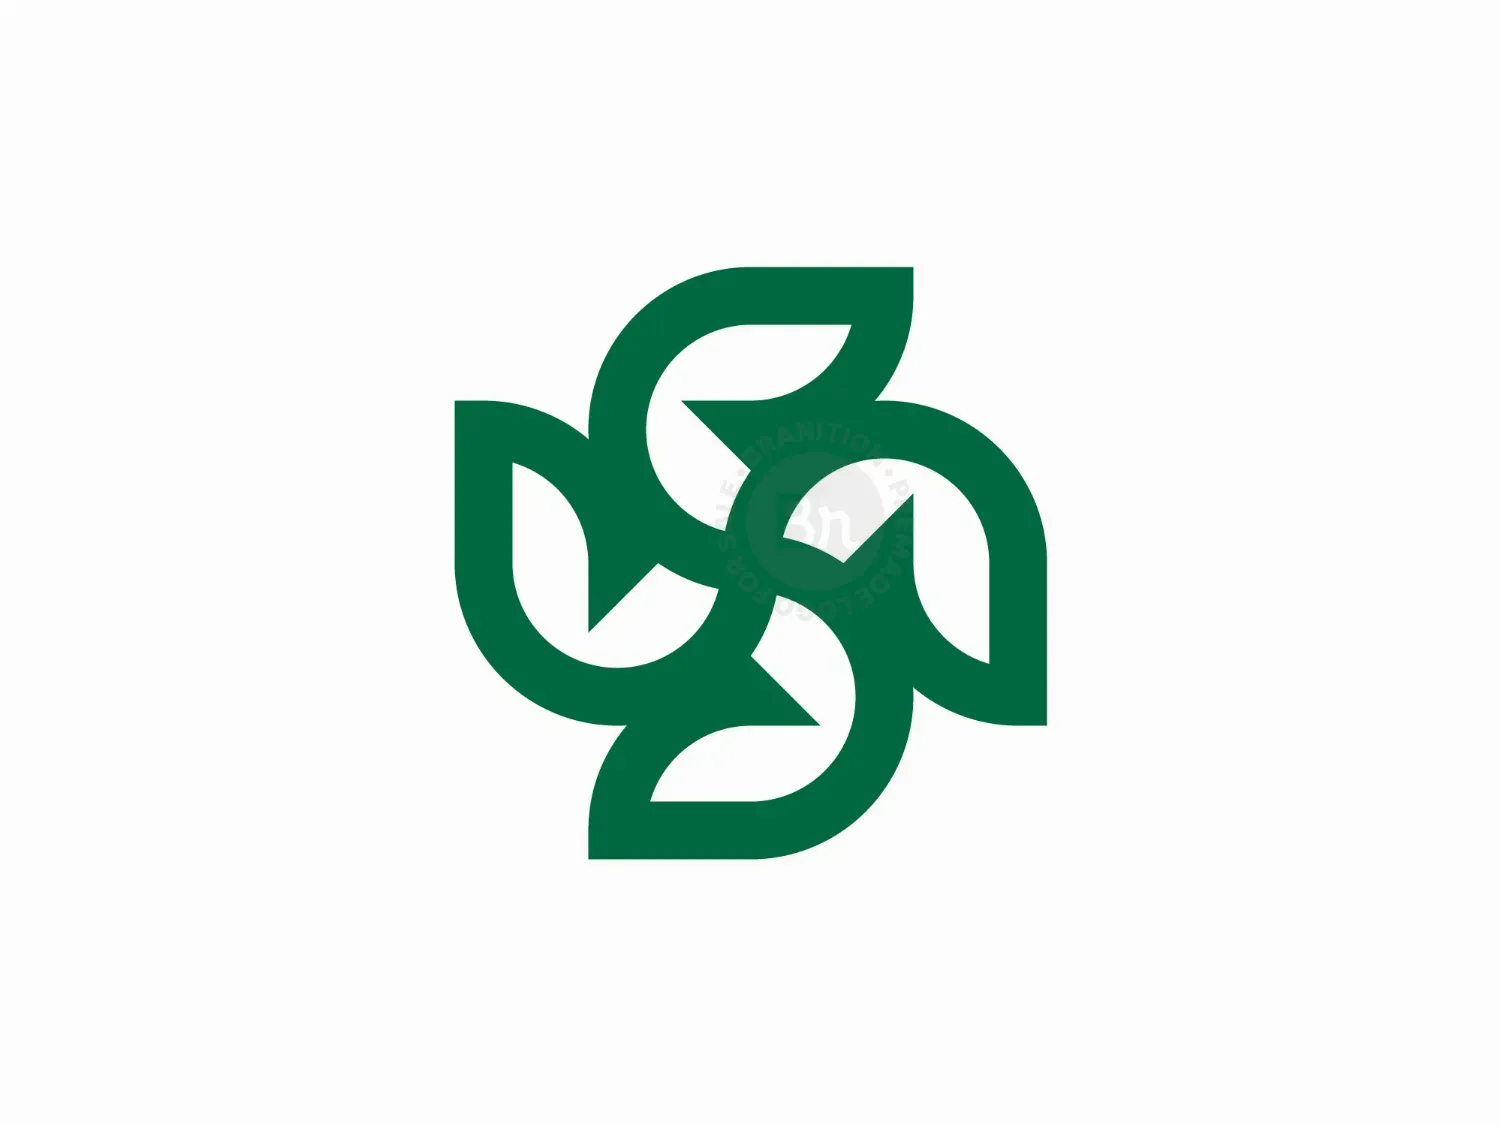 Letter S Leaf Logo